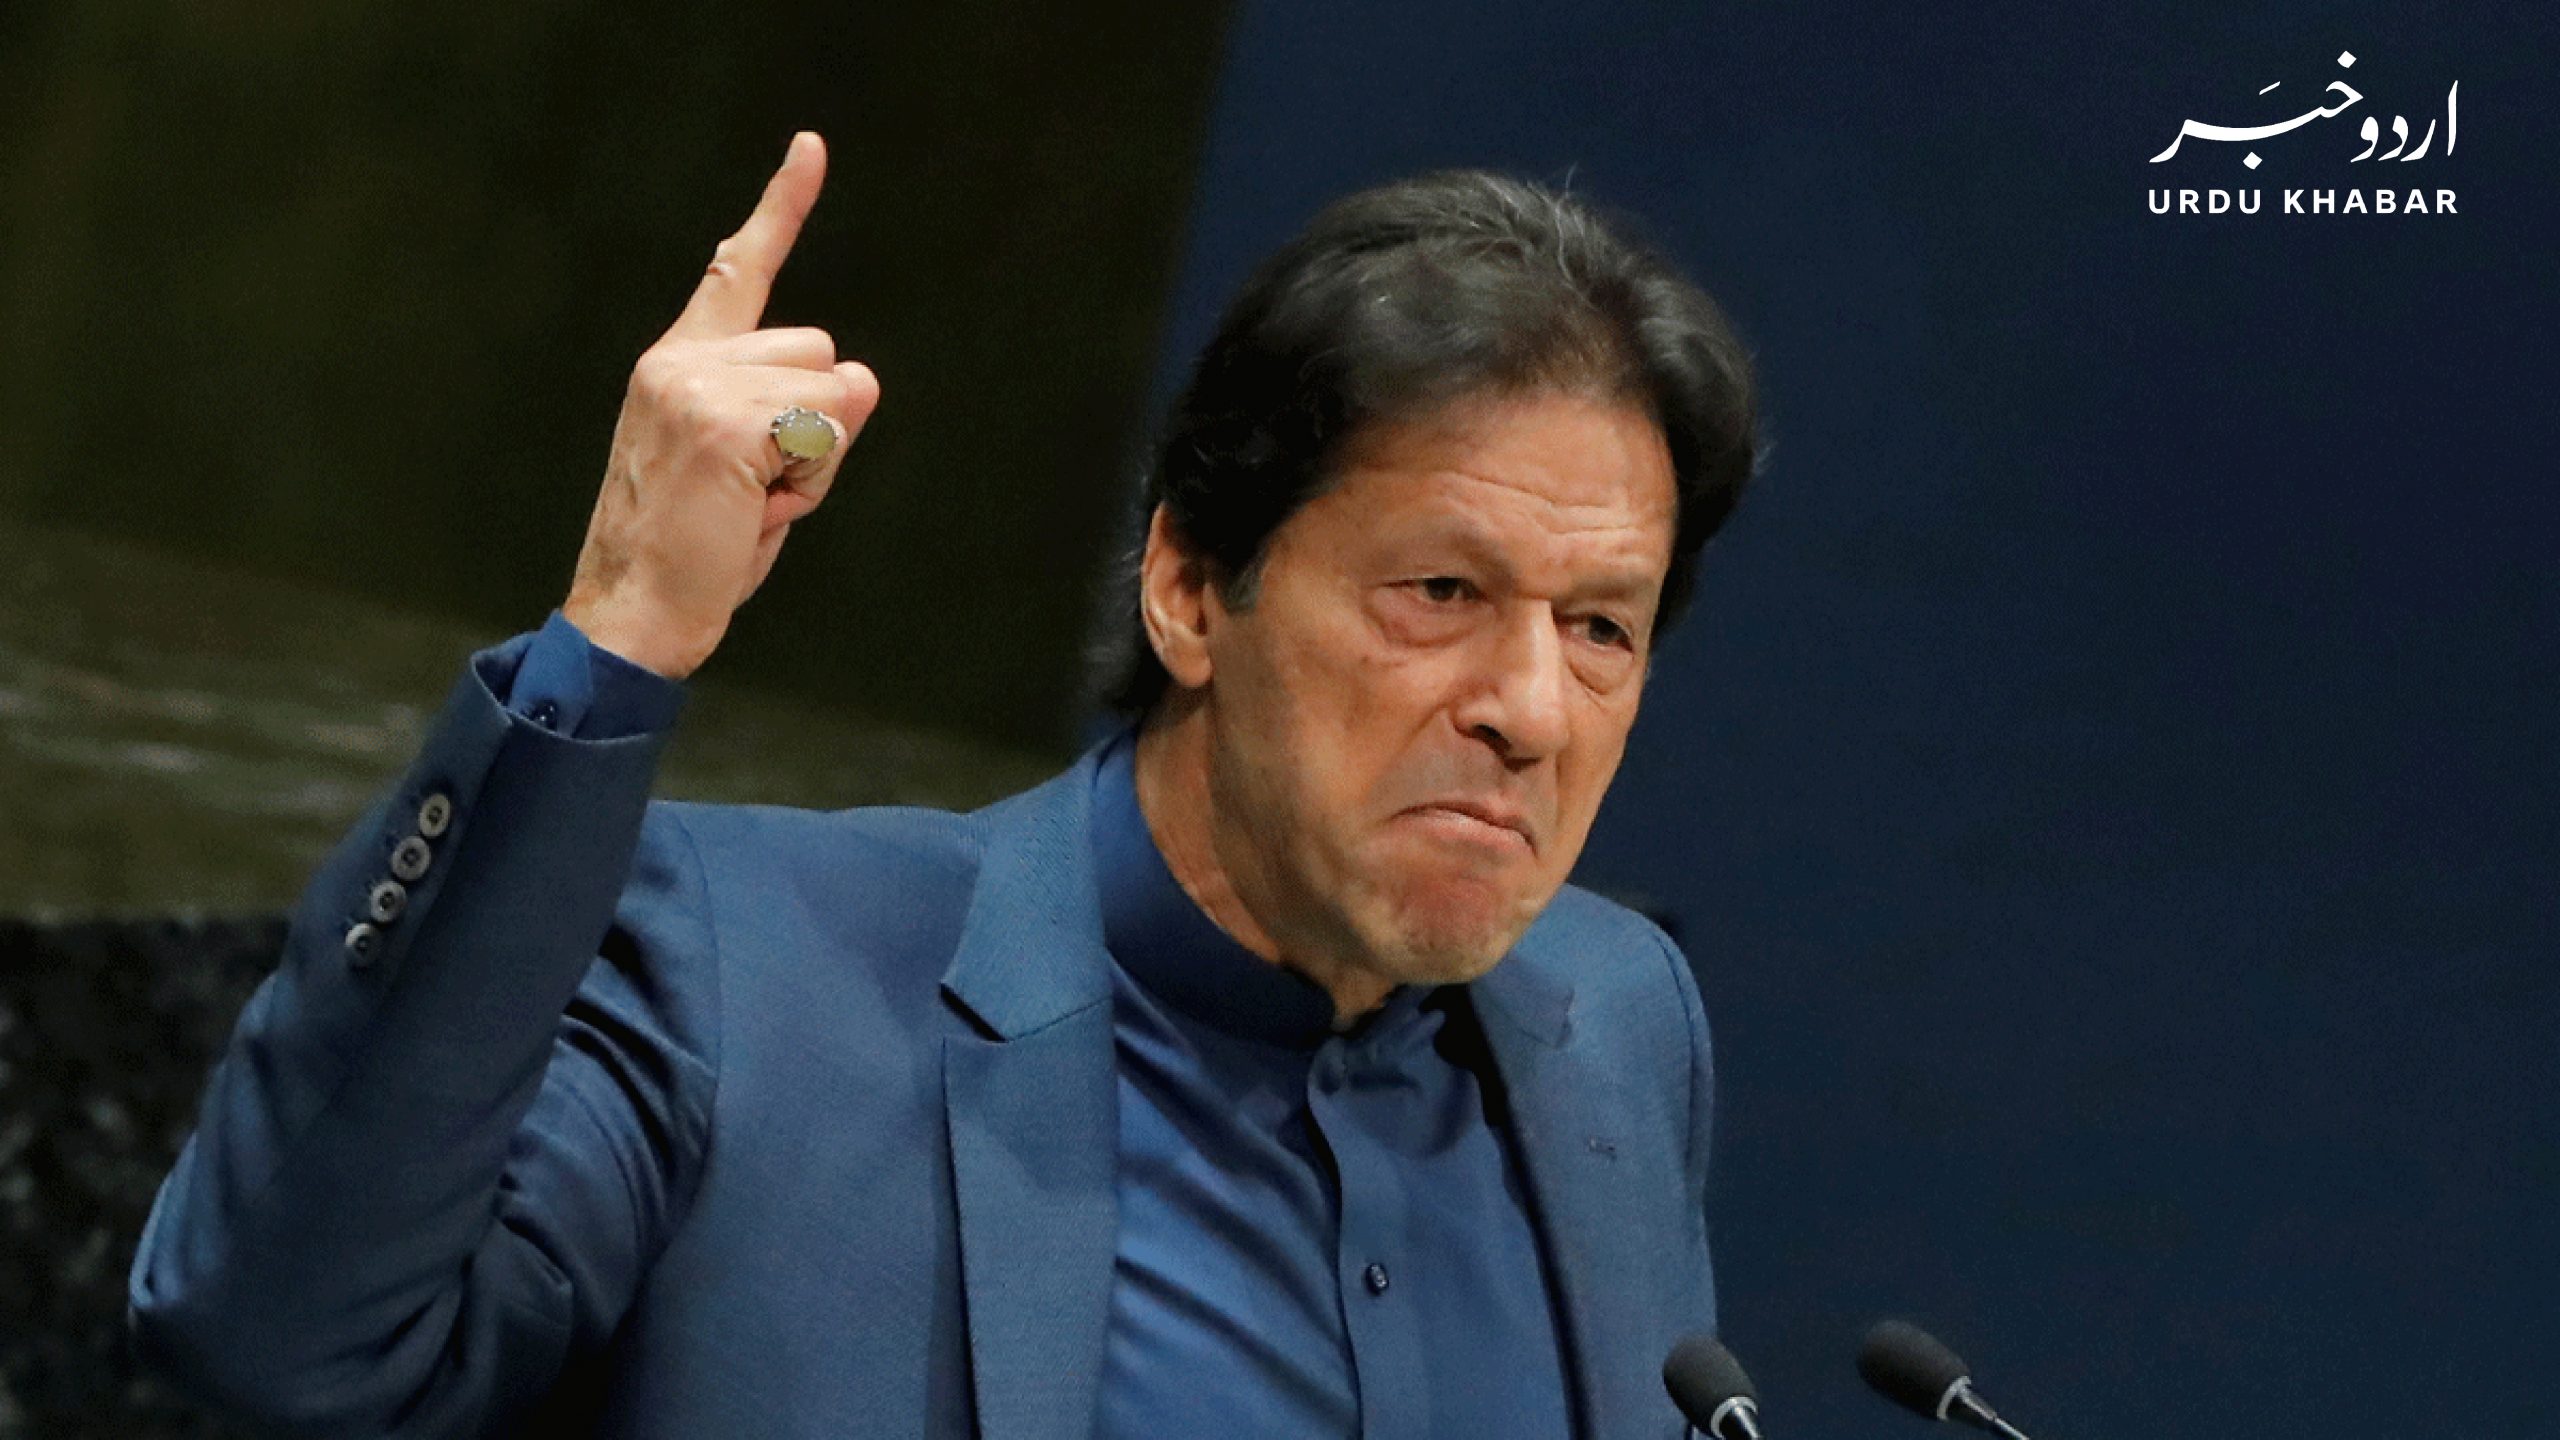 عمران خان ہمسایہ ممالک سے بہترین تعلقات کے خواہش مند